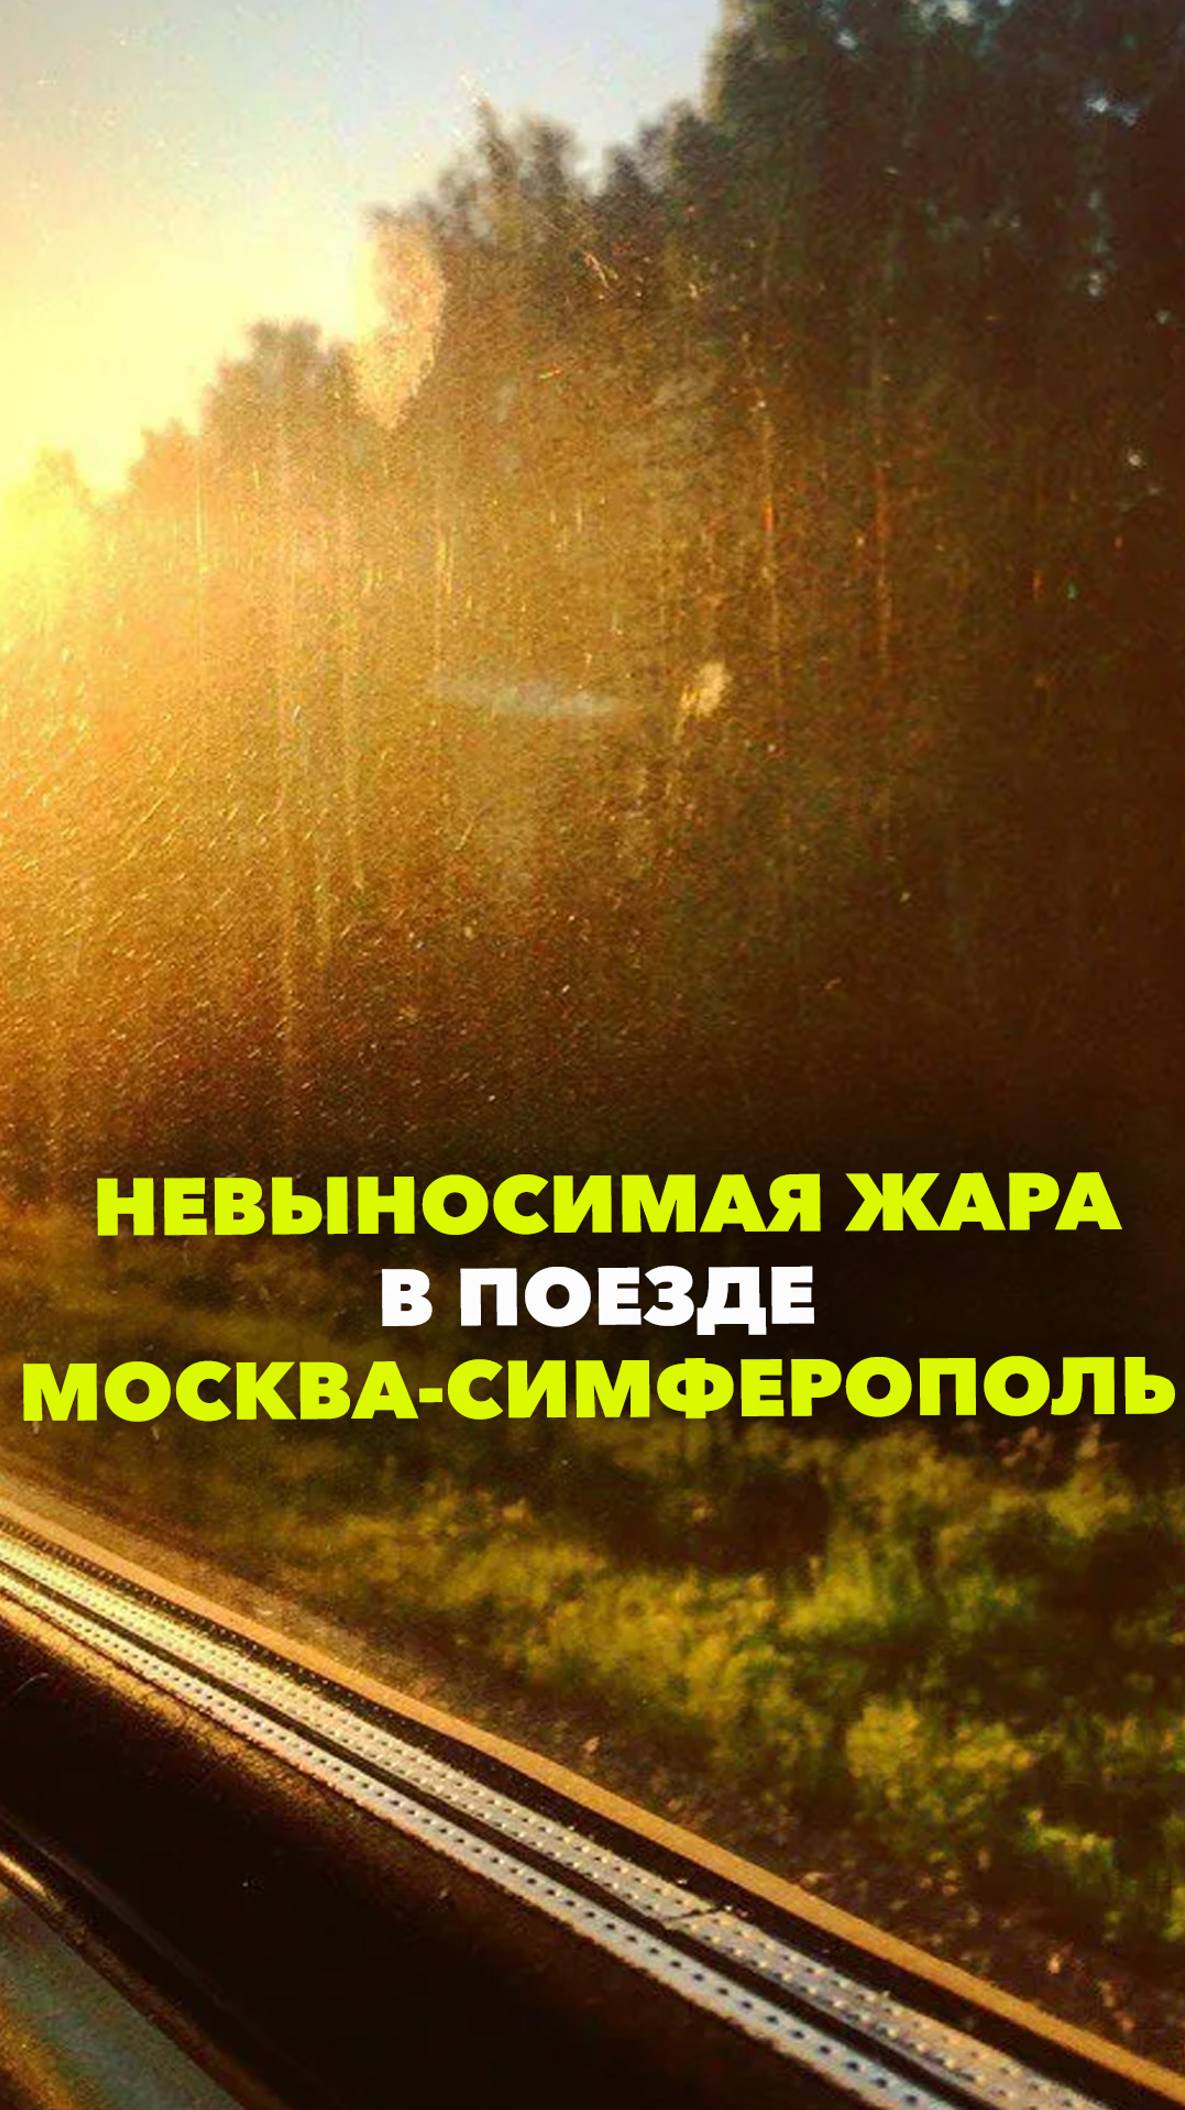 В поезде Москва-Симферополь не работают кондиционеры и аномальная жара: в туалете +35, в купе за 40